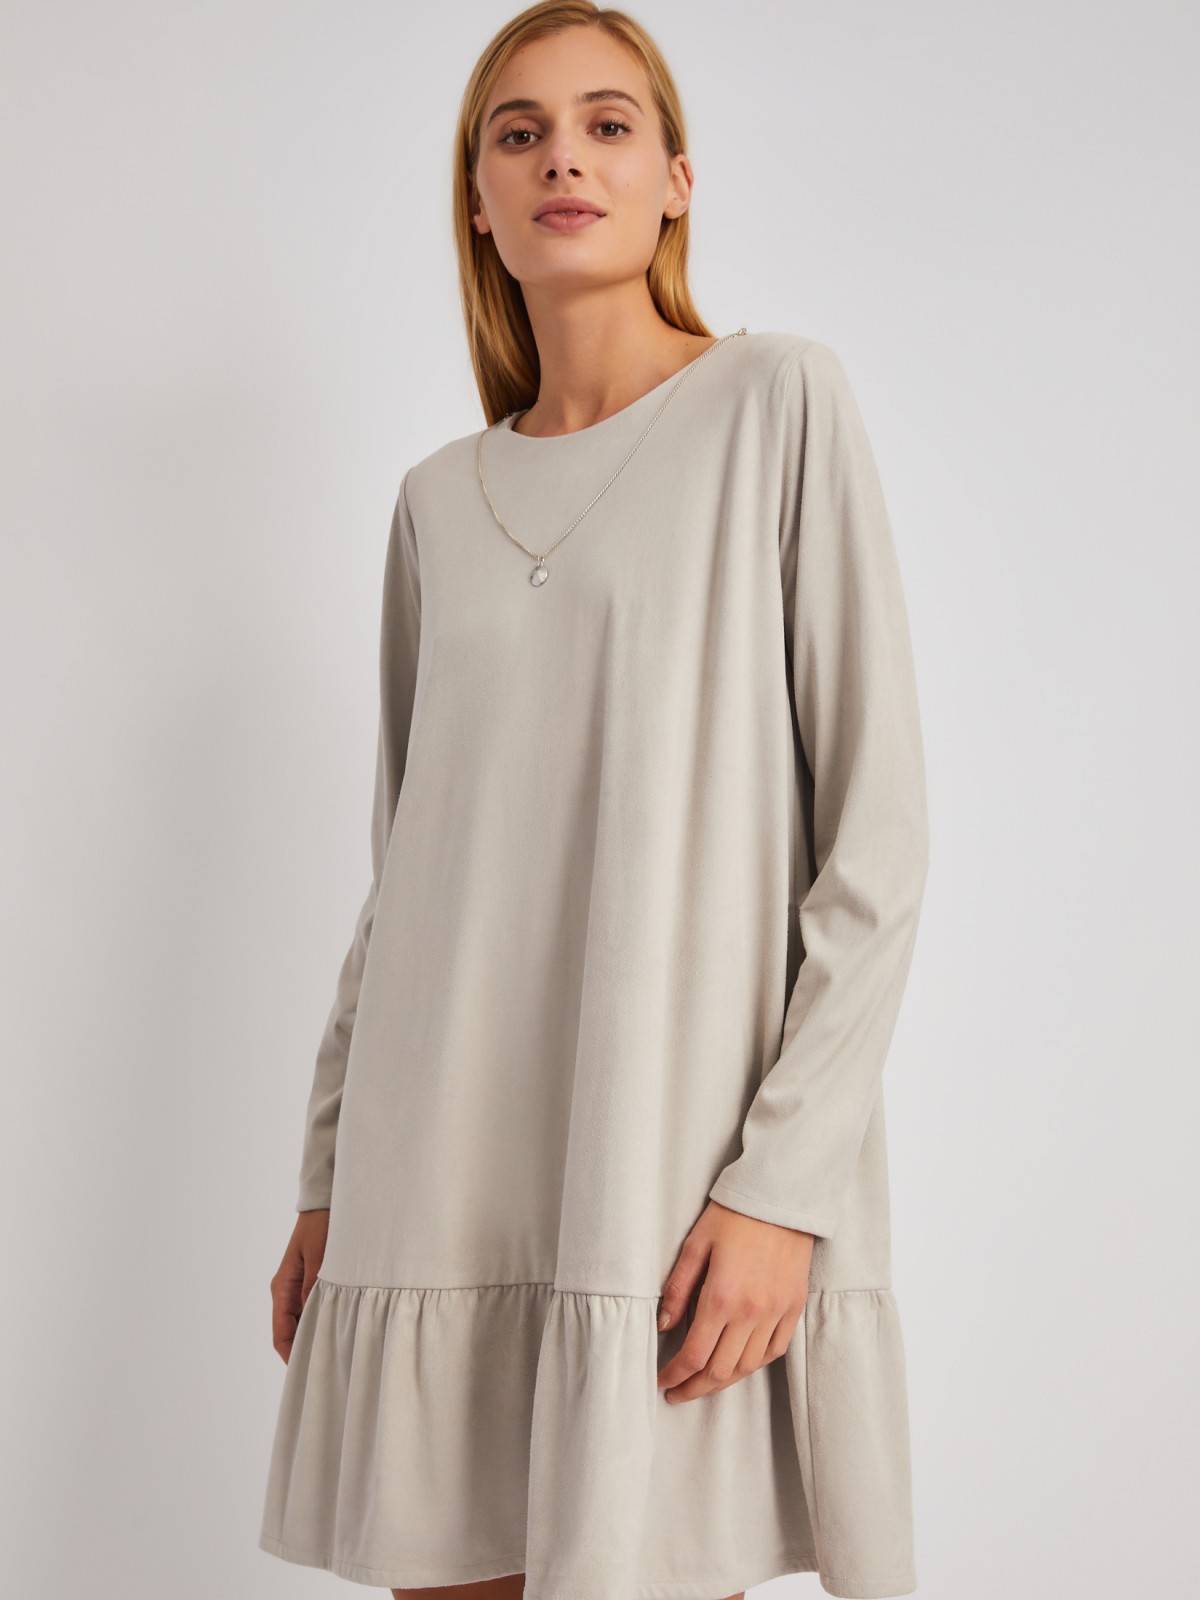 Платье длины мини из экозамши с воланом и подвеской zolla 024118259203, цвет светло-серый, размер XS